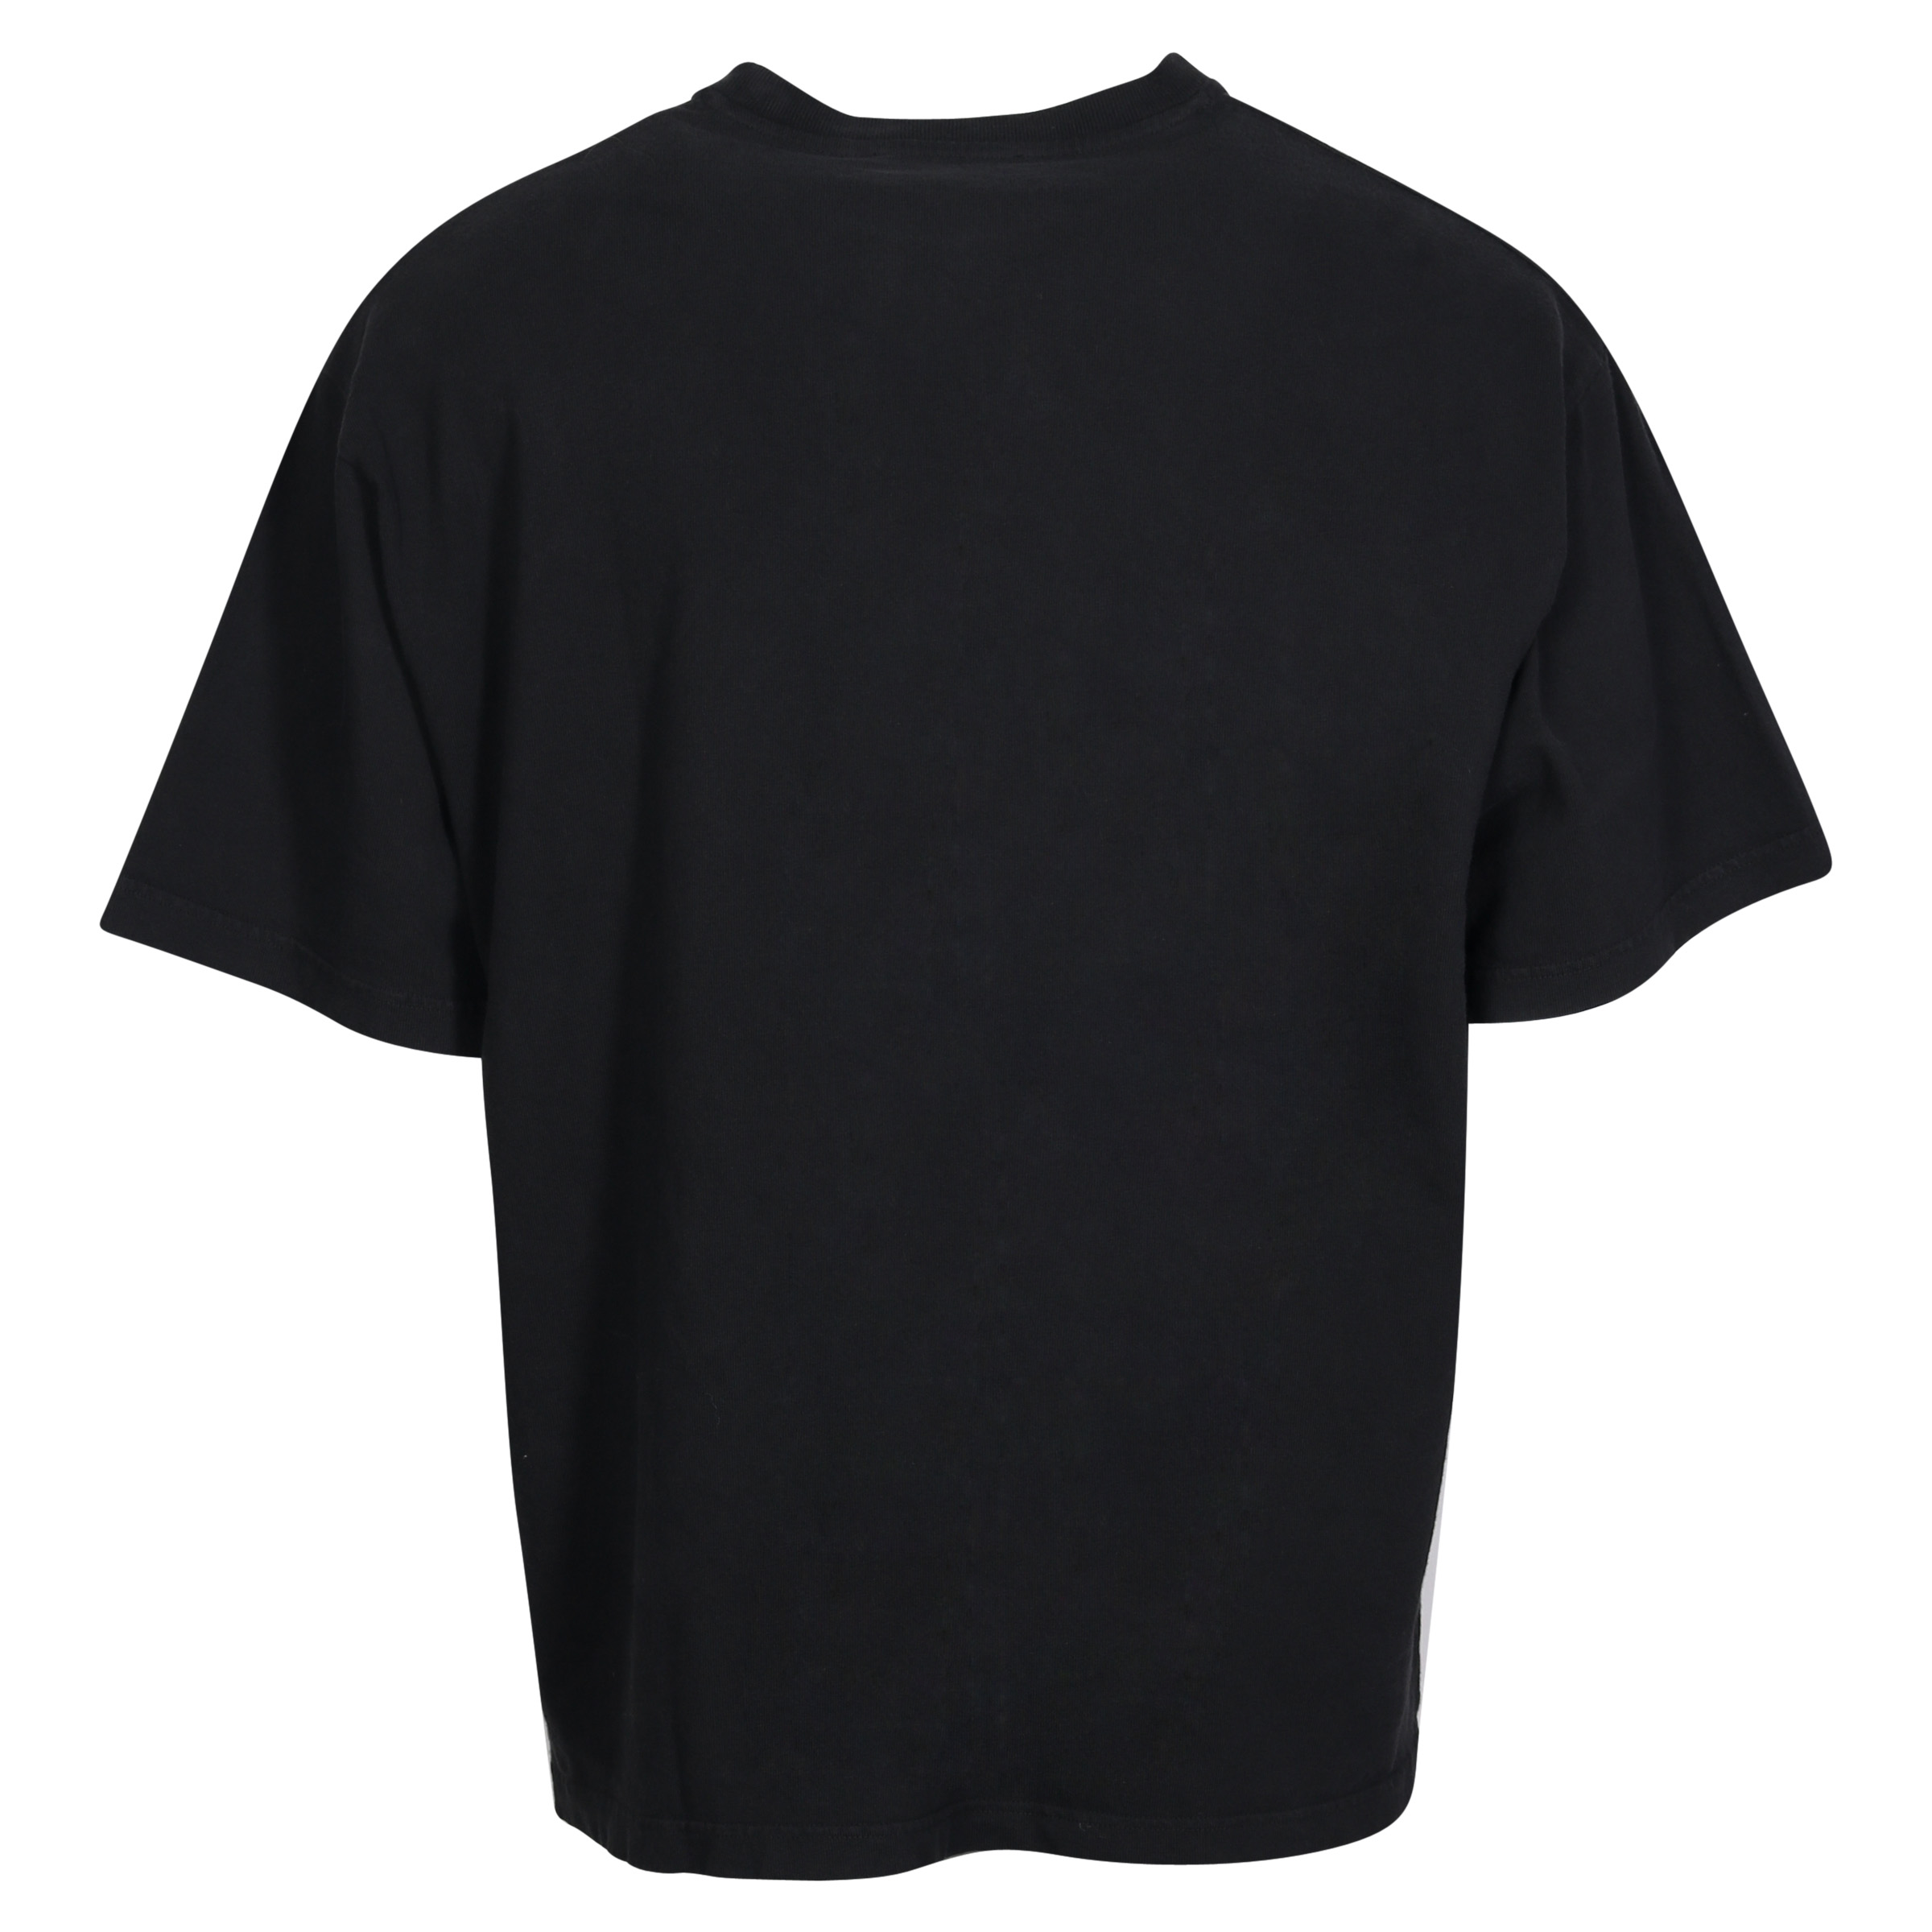 Acne Studios Printed T-Shirt in Black